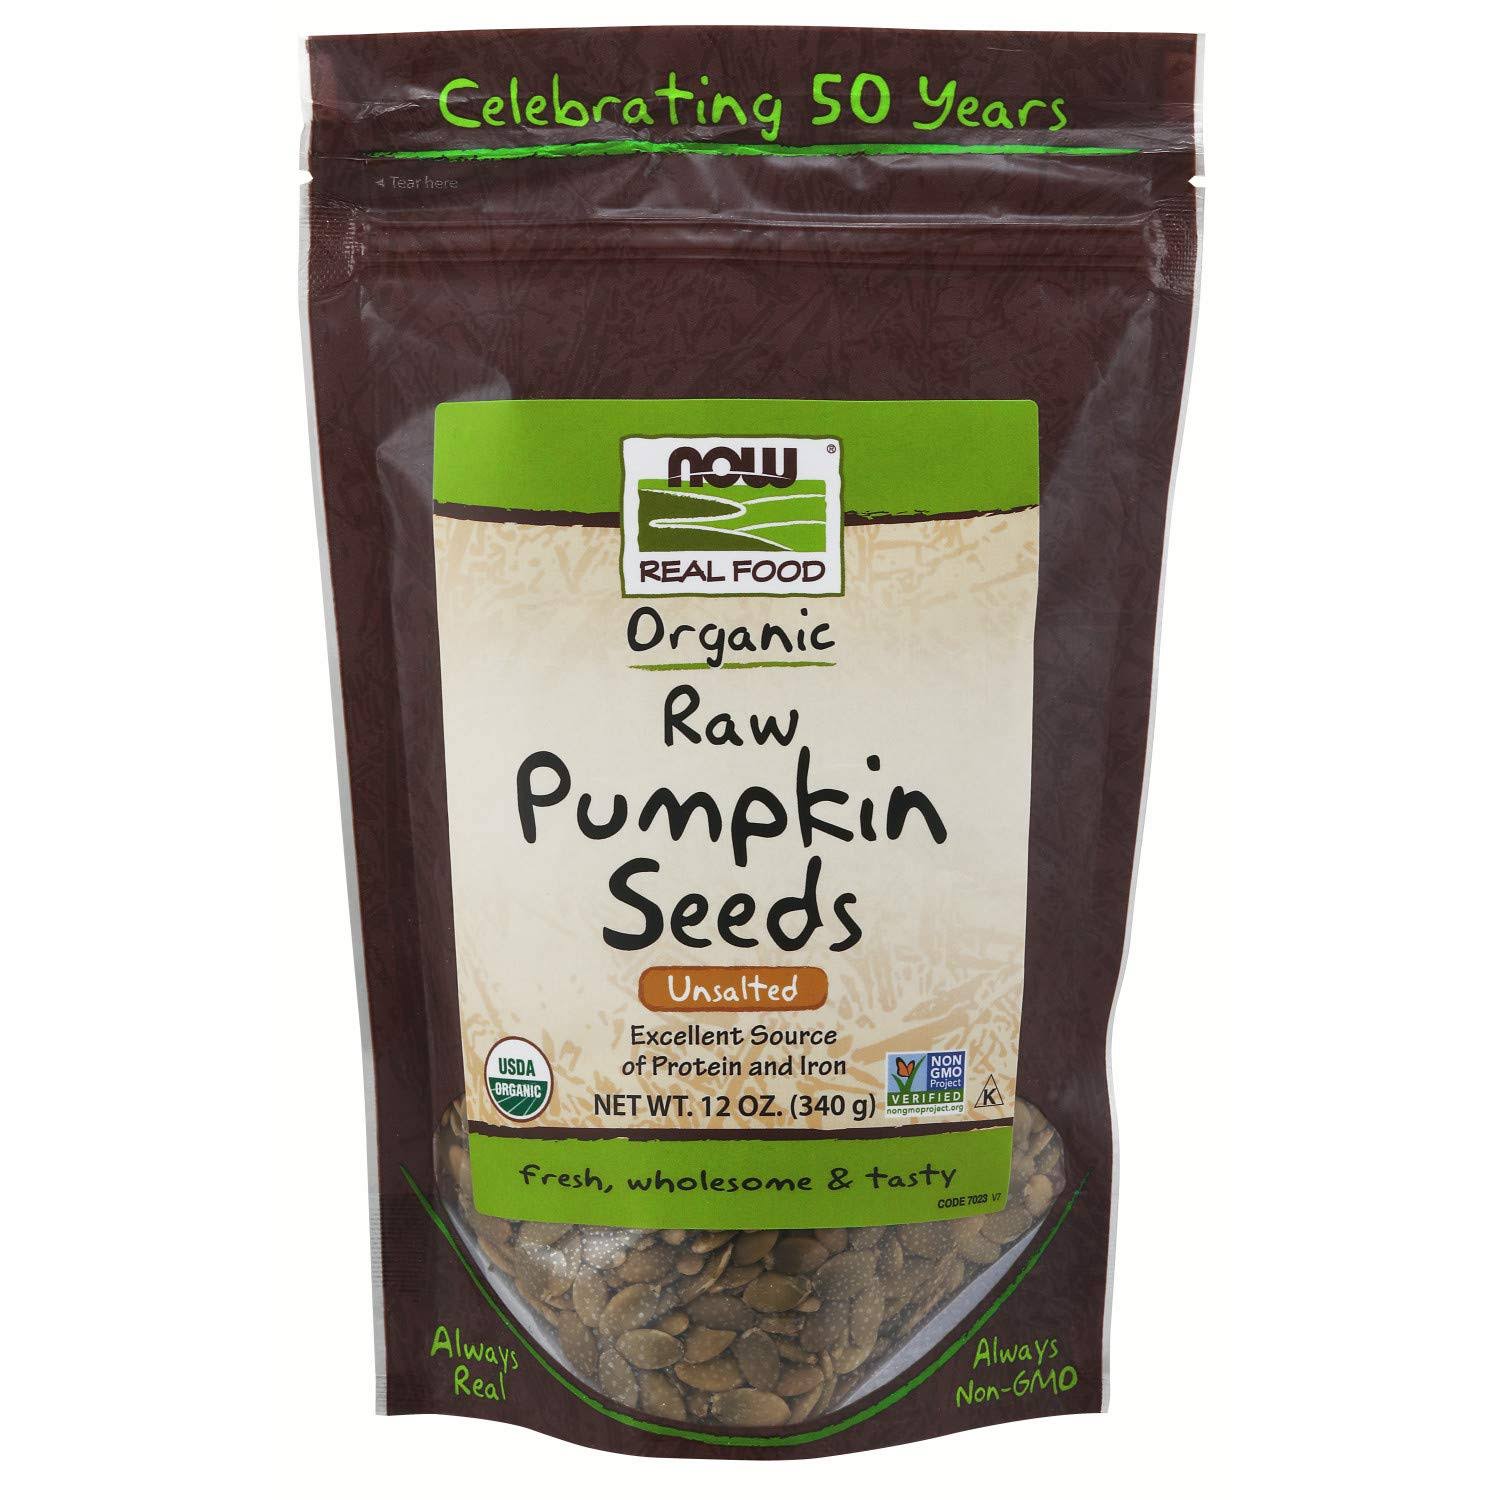 Now Foods Organic Pumpkin Seeds - 12oz, Unsalted